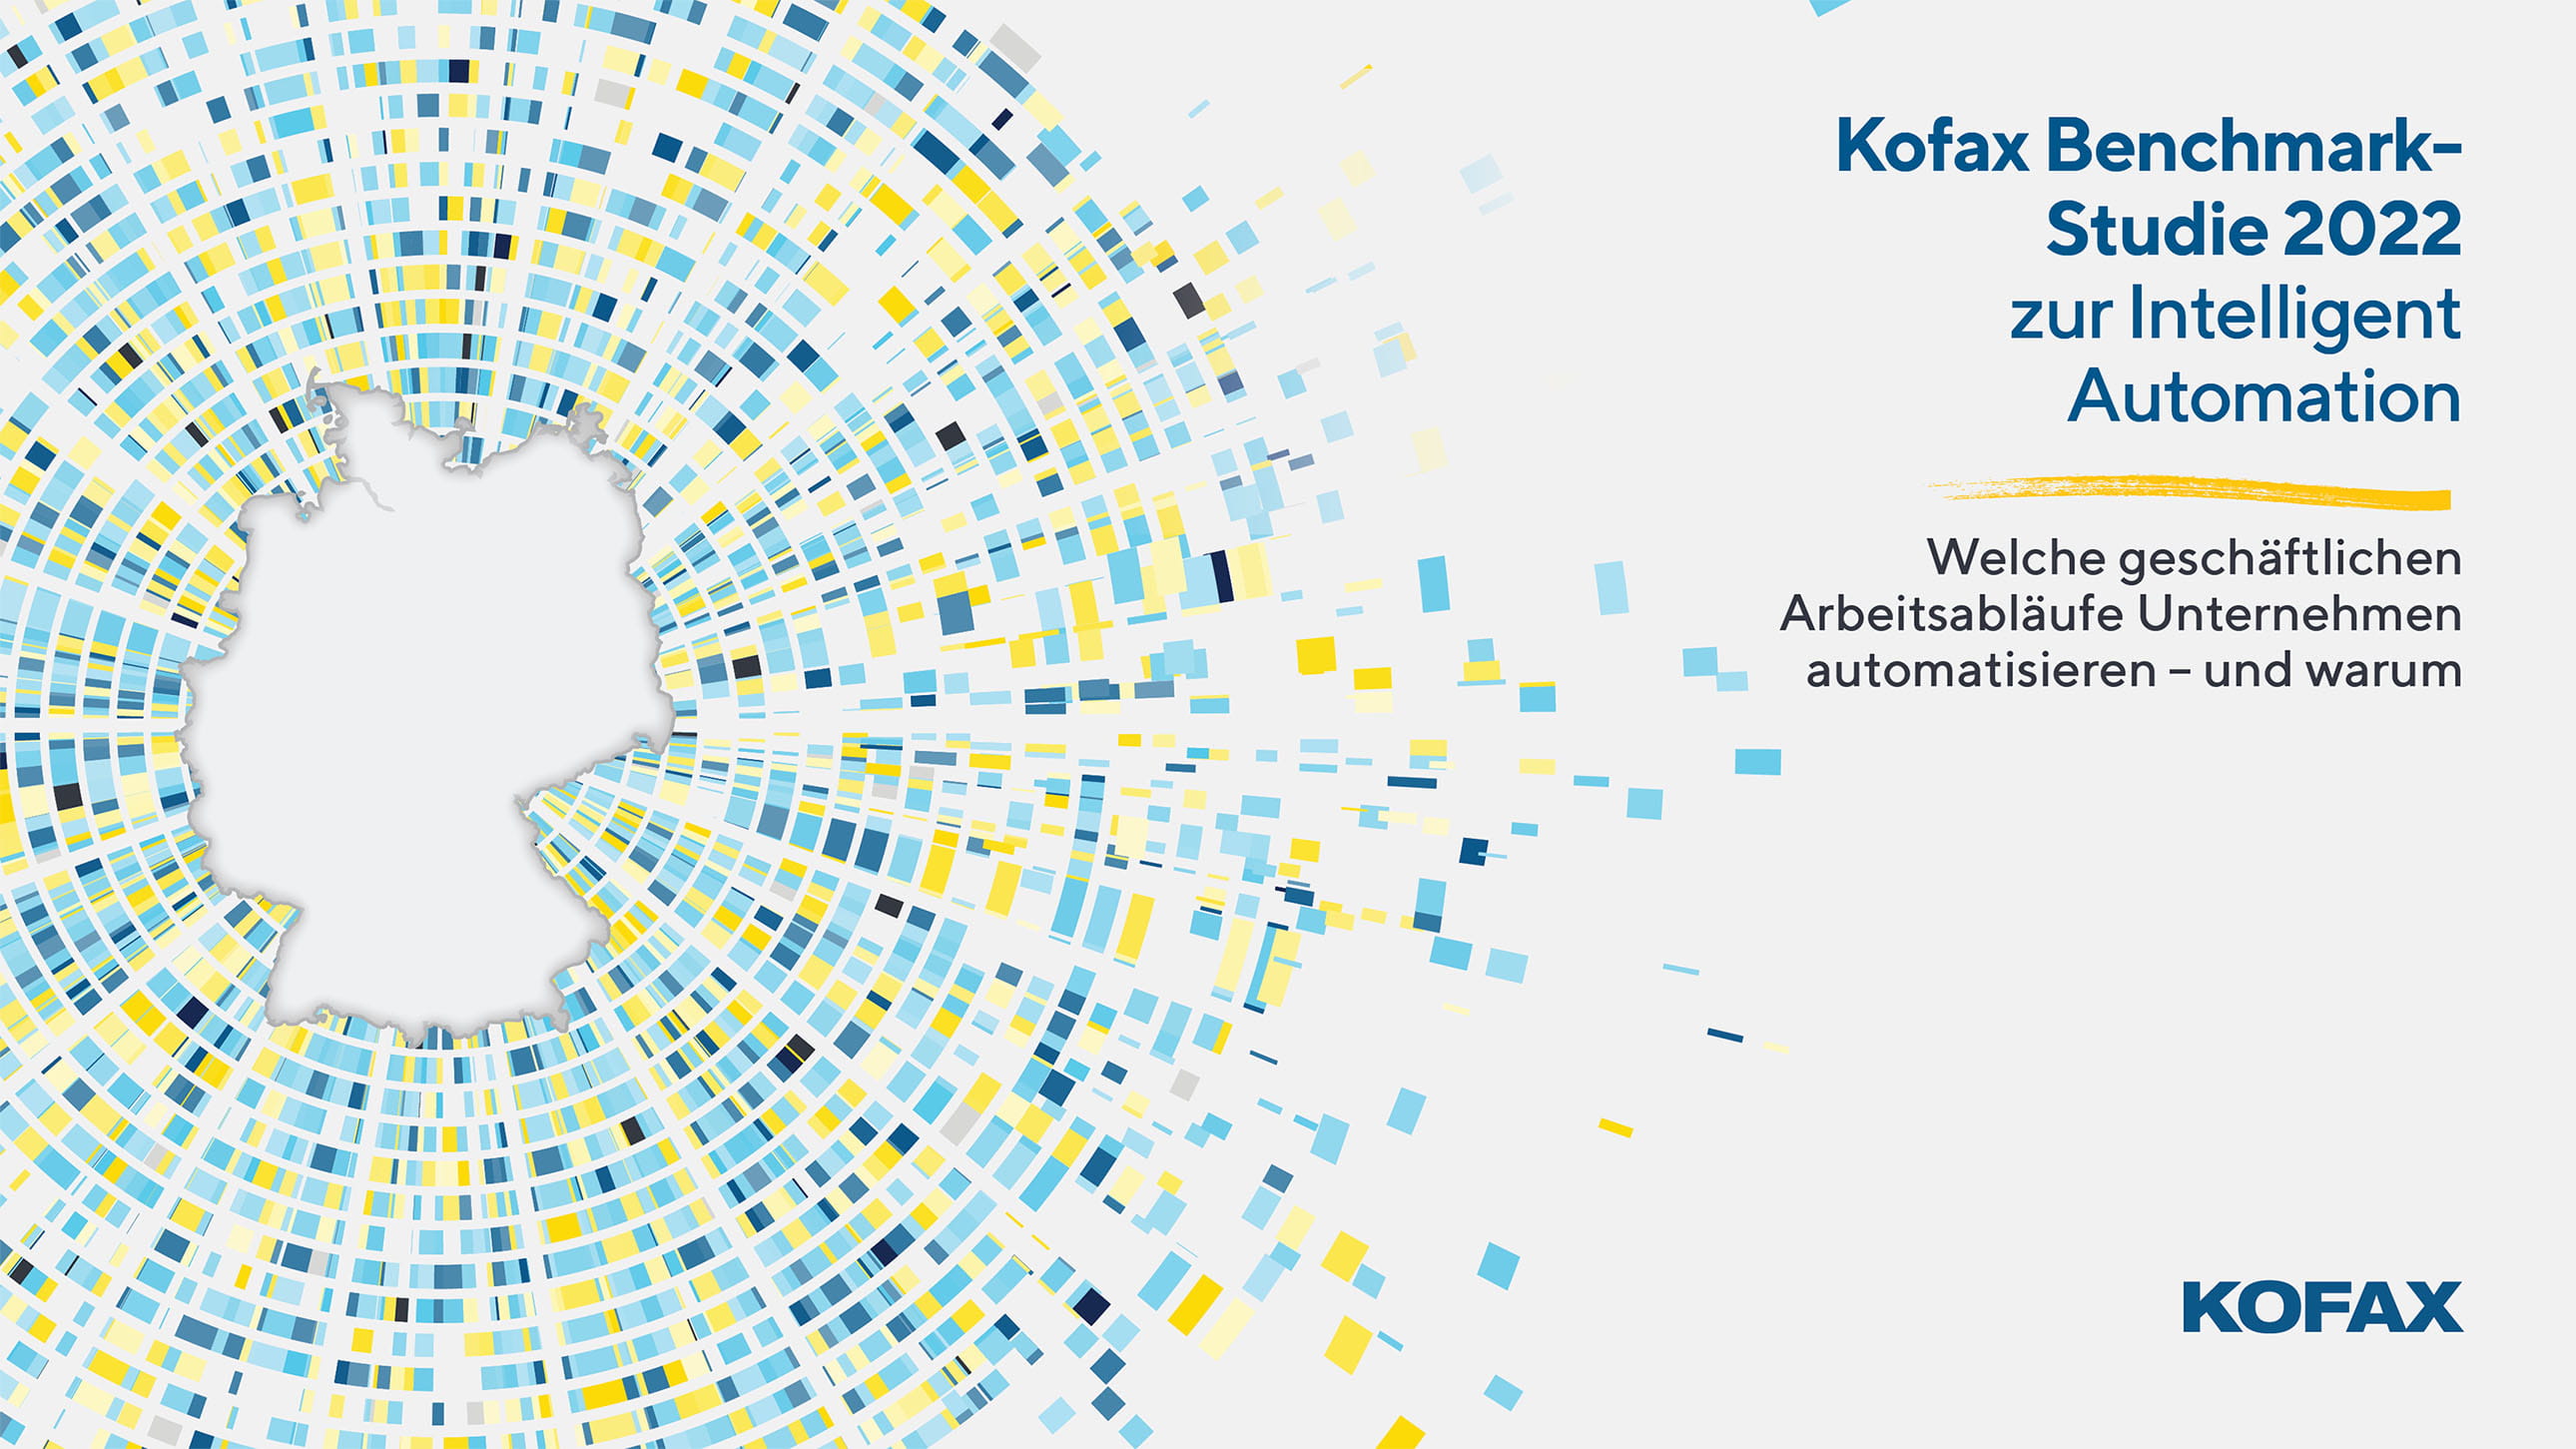 Kofax BenchmarkStudie 2022 zur Intelligent Automation